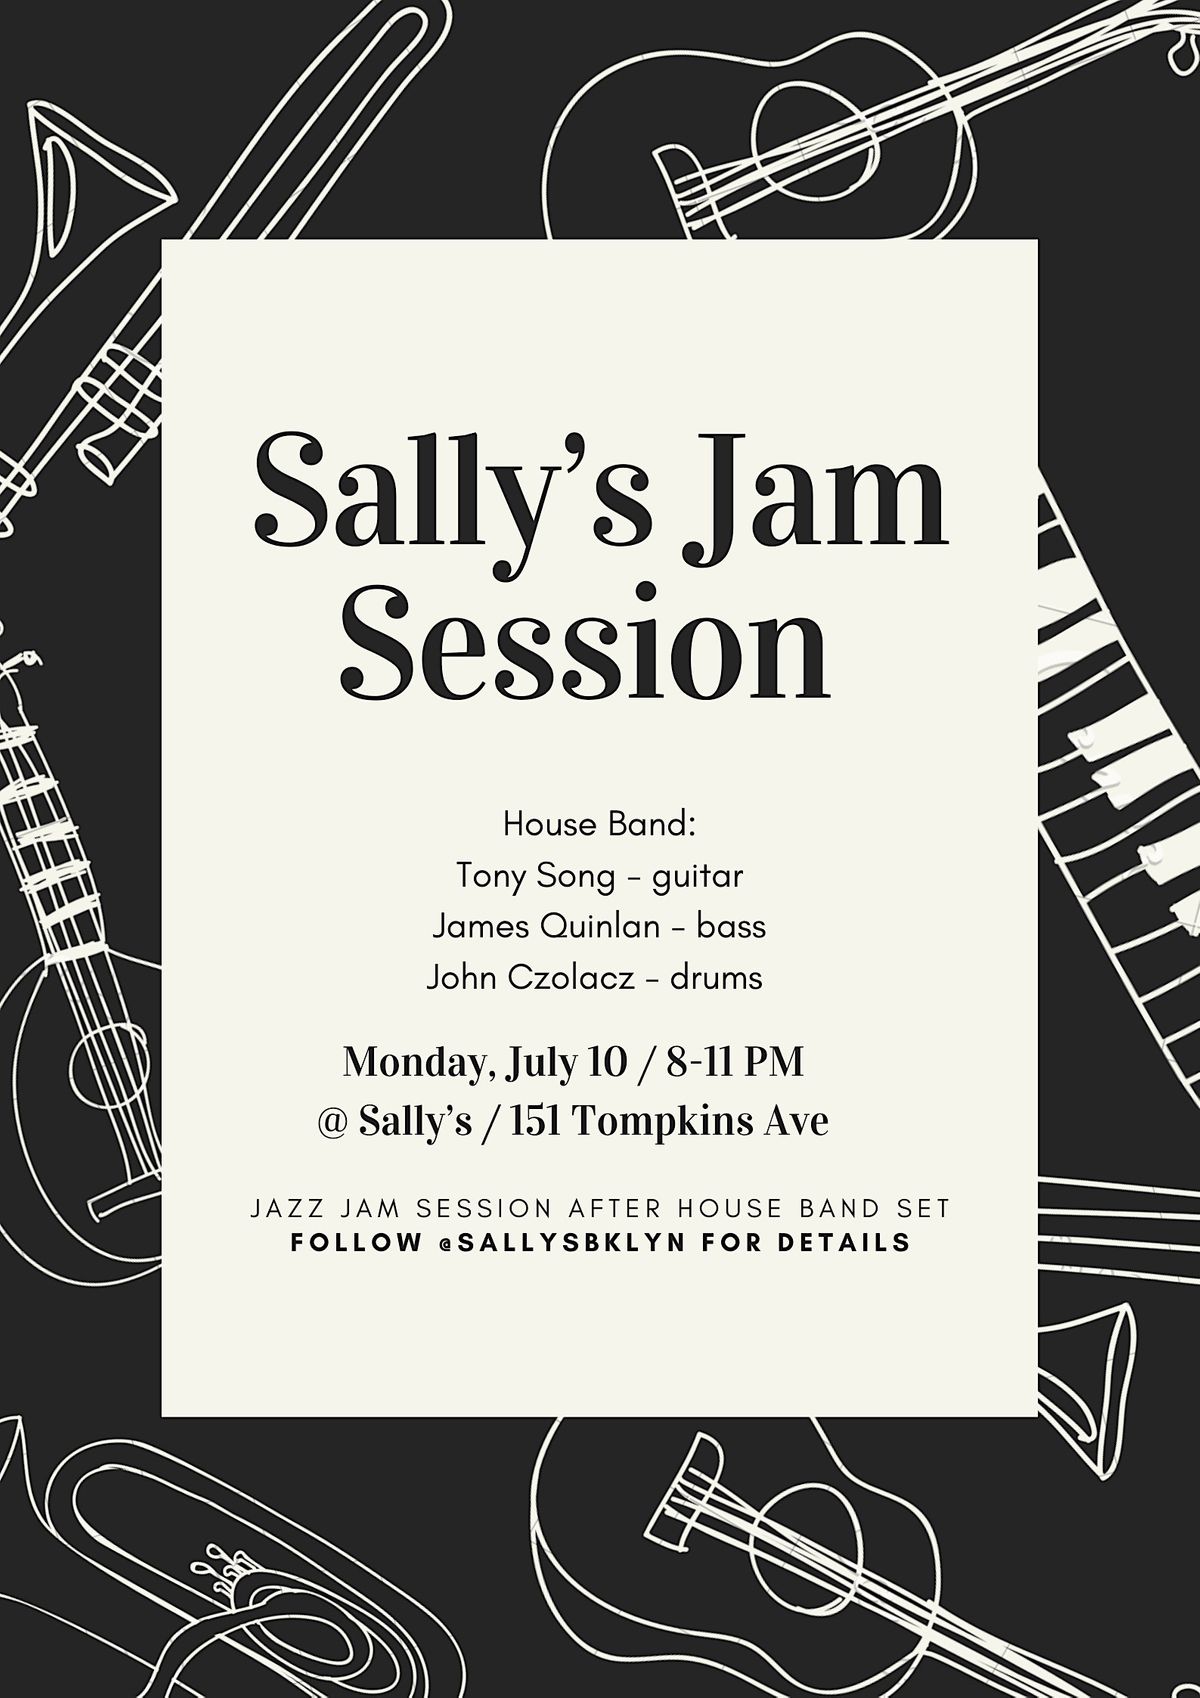 Sally's Jazz Night + Jam Session